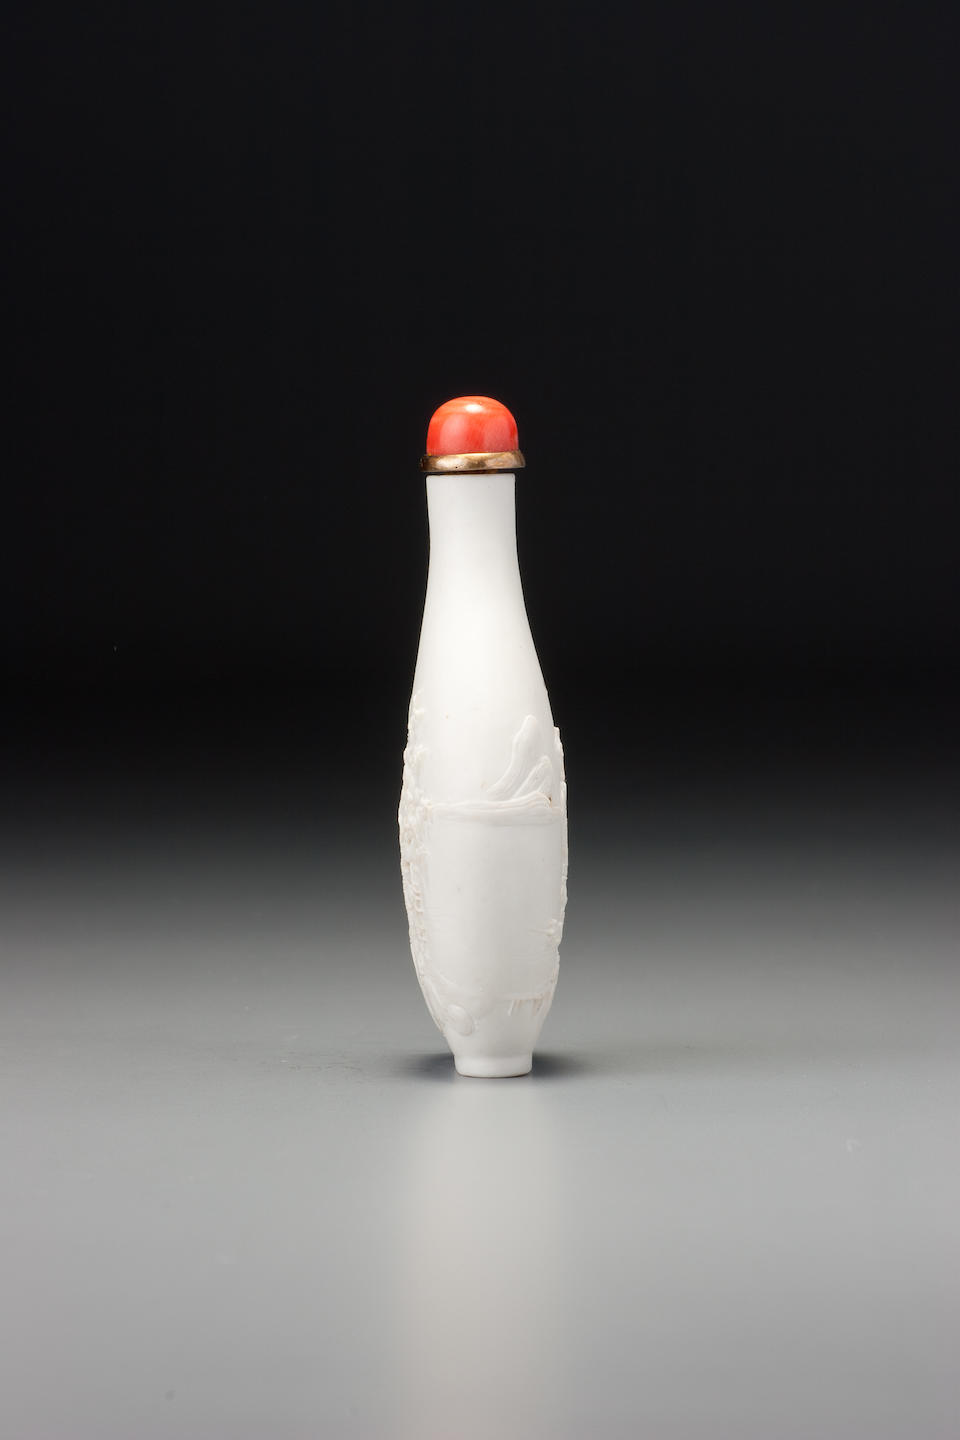 A carved porcelain 'landscape' snuff bottle Wang Jiemei, Jingdezhen, 1860&#8211;1923